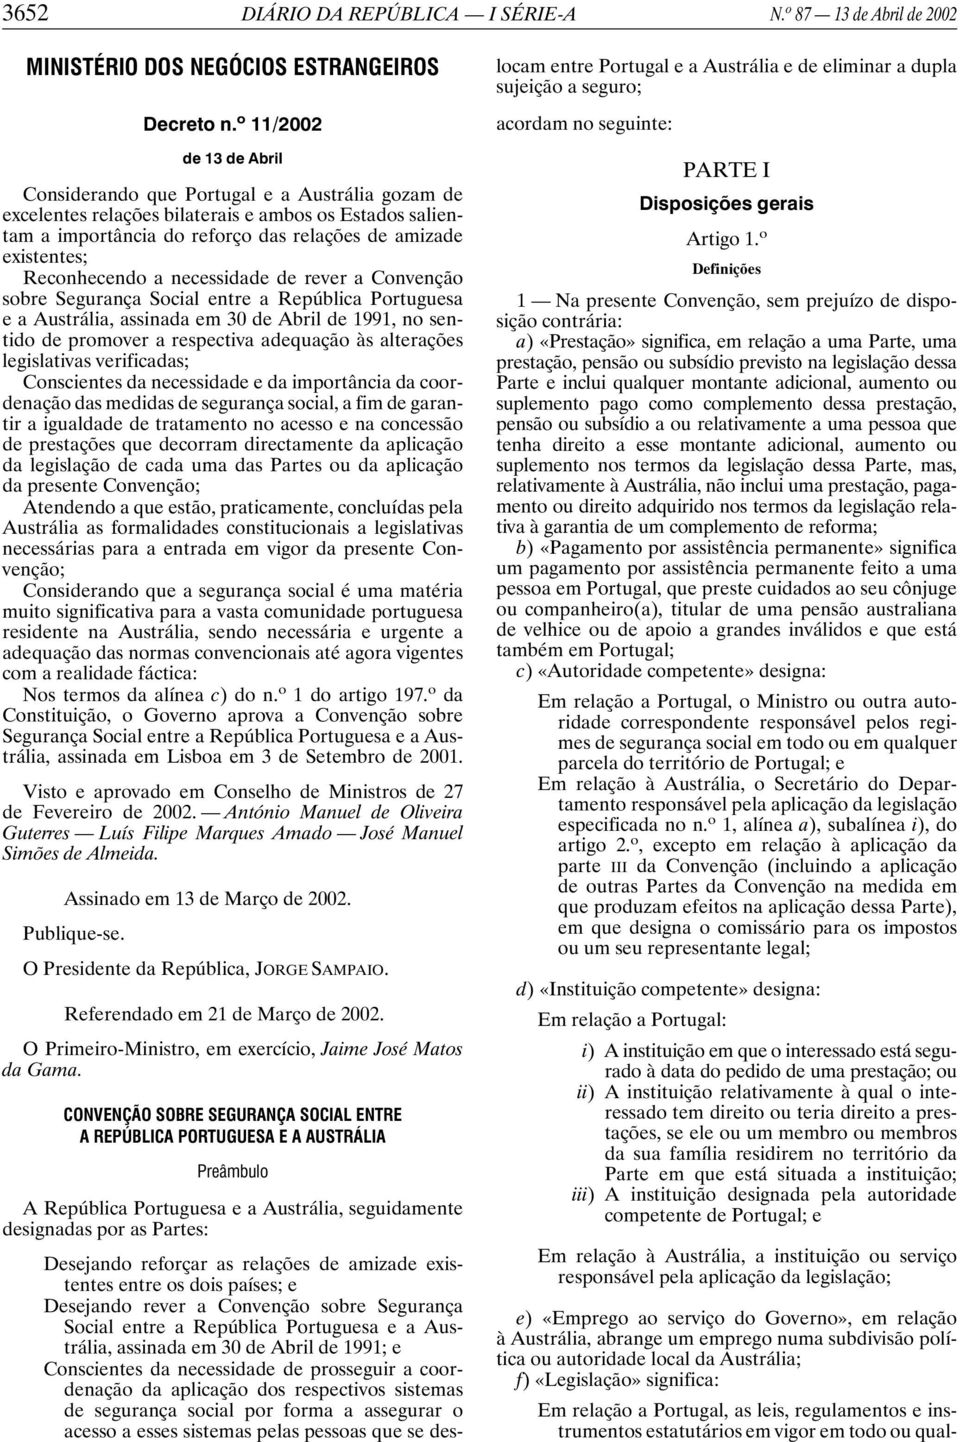 Reconhecendo a necessidade de rever a Convenção sobre Segurança Social entre a República Portuguesa e a Austrália, assinada em 30 de Abril de 1991, no sentido de promover a respectiva adequação às